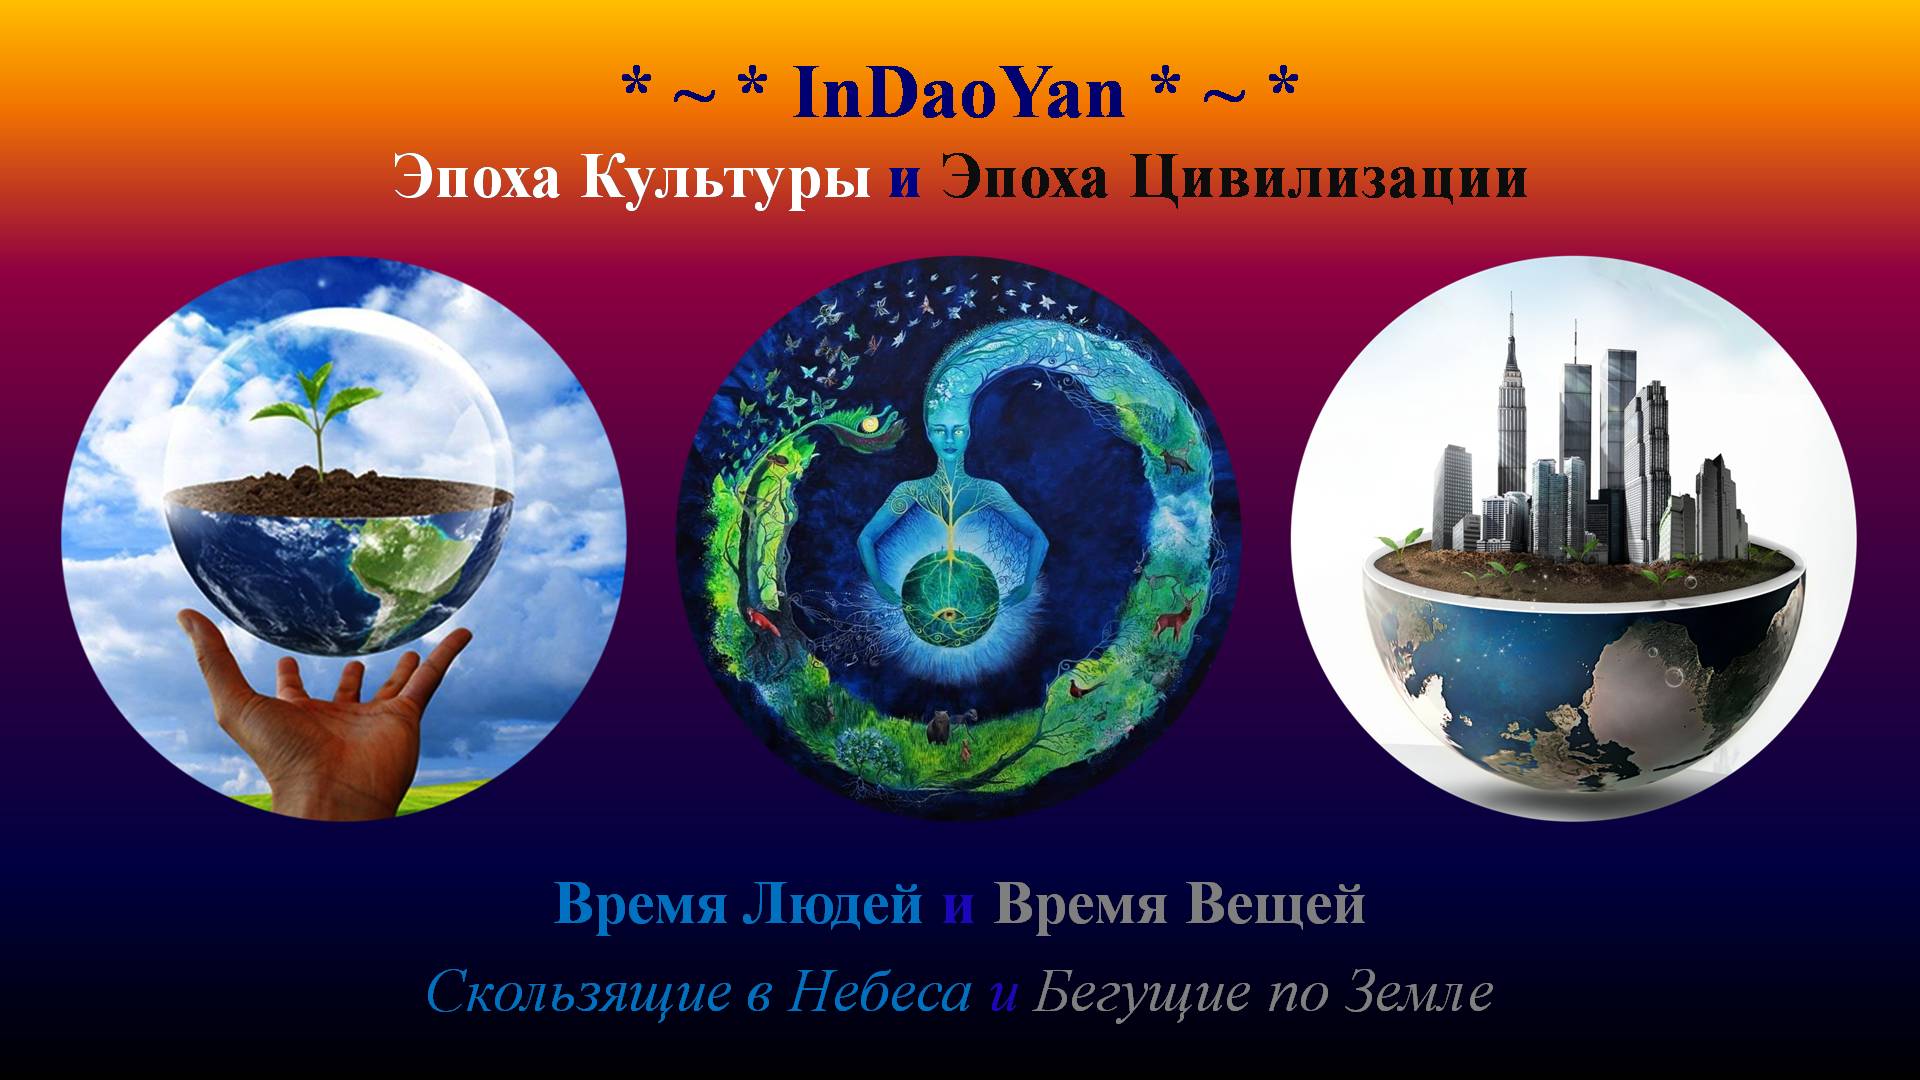 InDaoYan - Эпоха Культуры и Эпоха Цивилизации (Время Людей и Время Вещей)